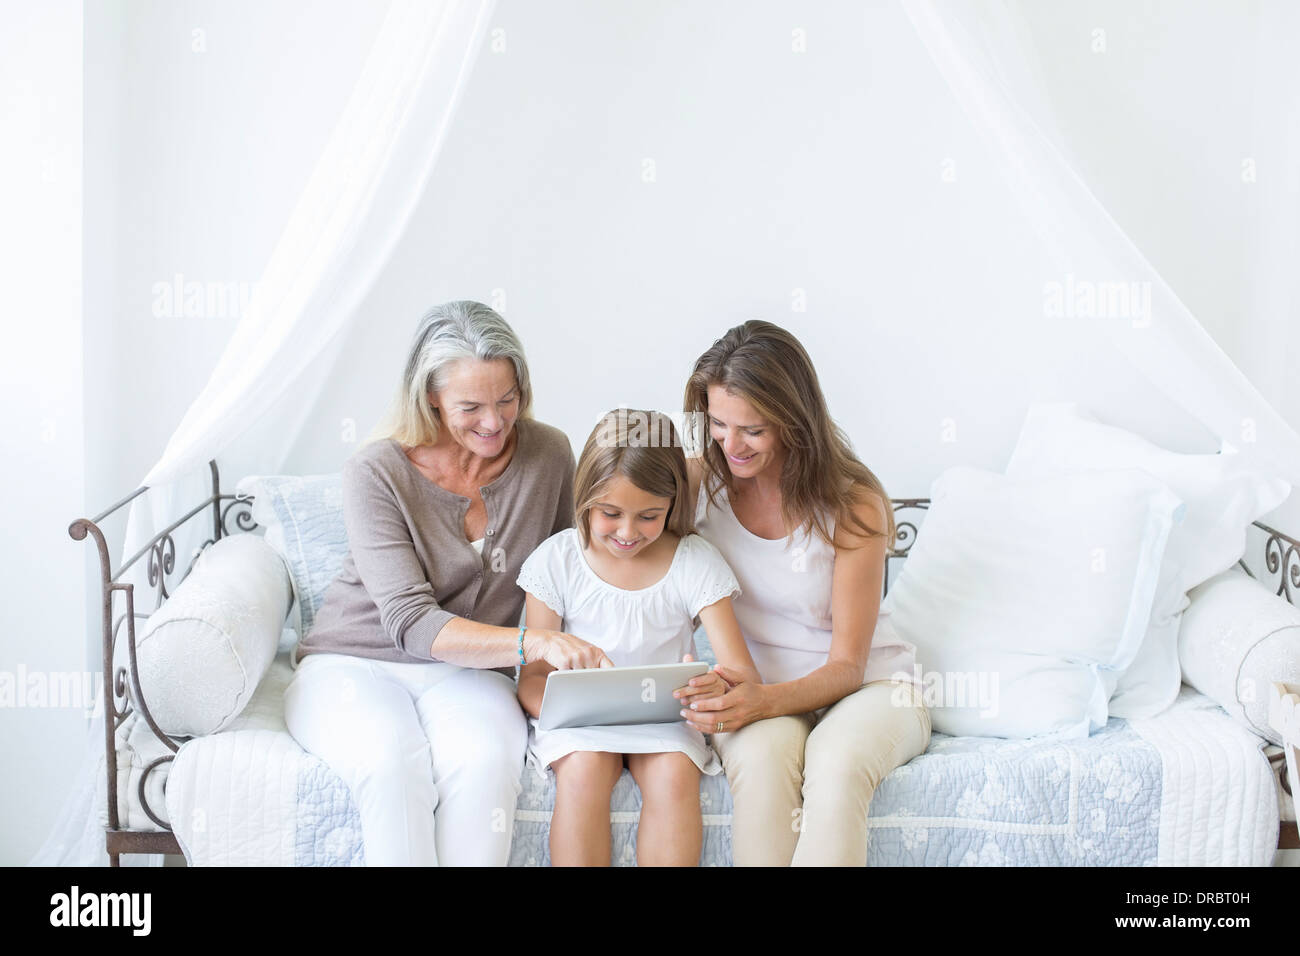 Les femmes multi-generation using digital tablet sur lit de repos Banque D'Images